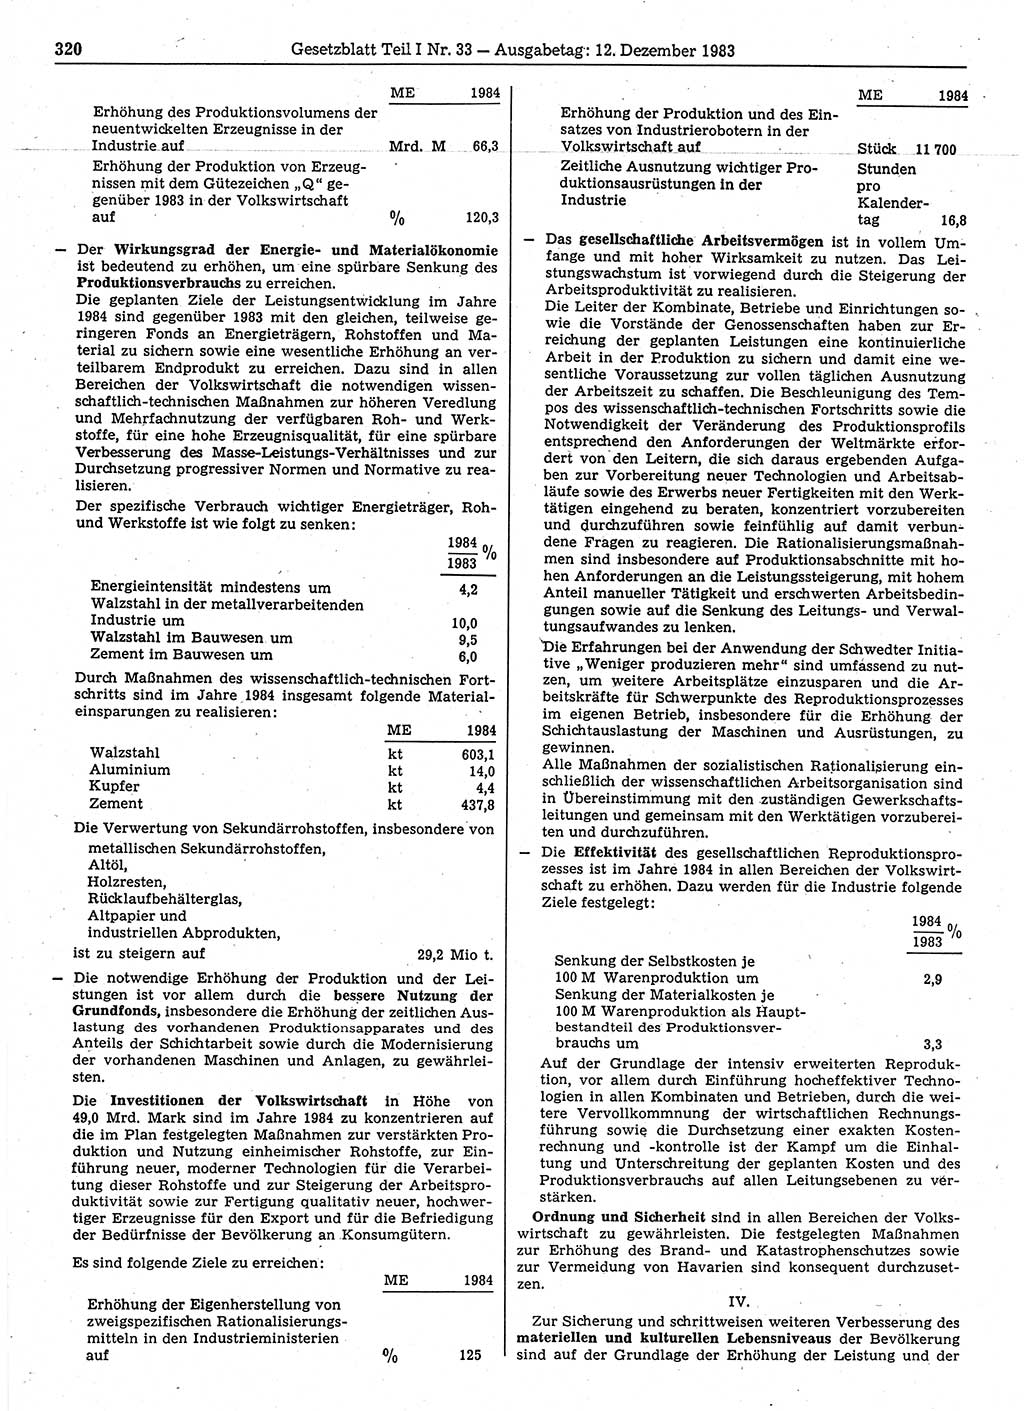 Gesetzblatt (GBl.) der Deutschen Demokratischen Republik (DDR) Teil Ⅰ 1983, Seite 320 (GBl. DDR Ⅰ 1983, S. 320)